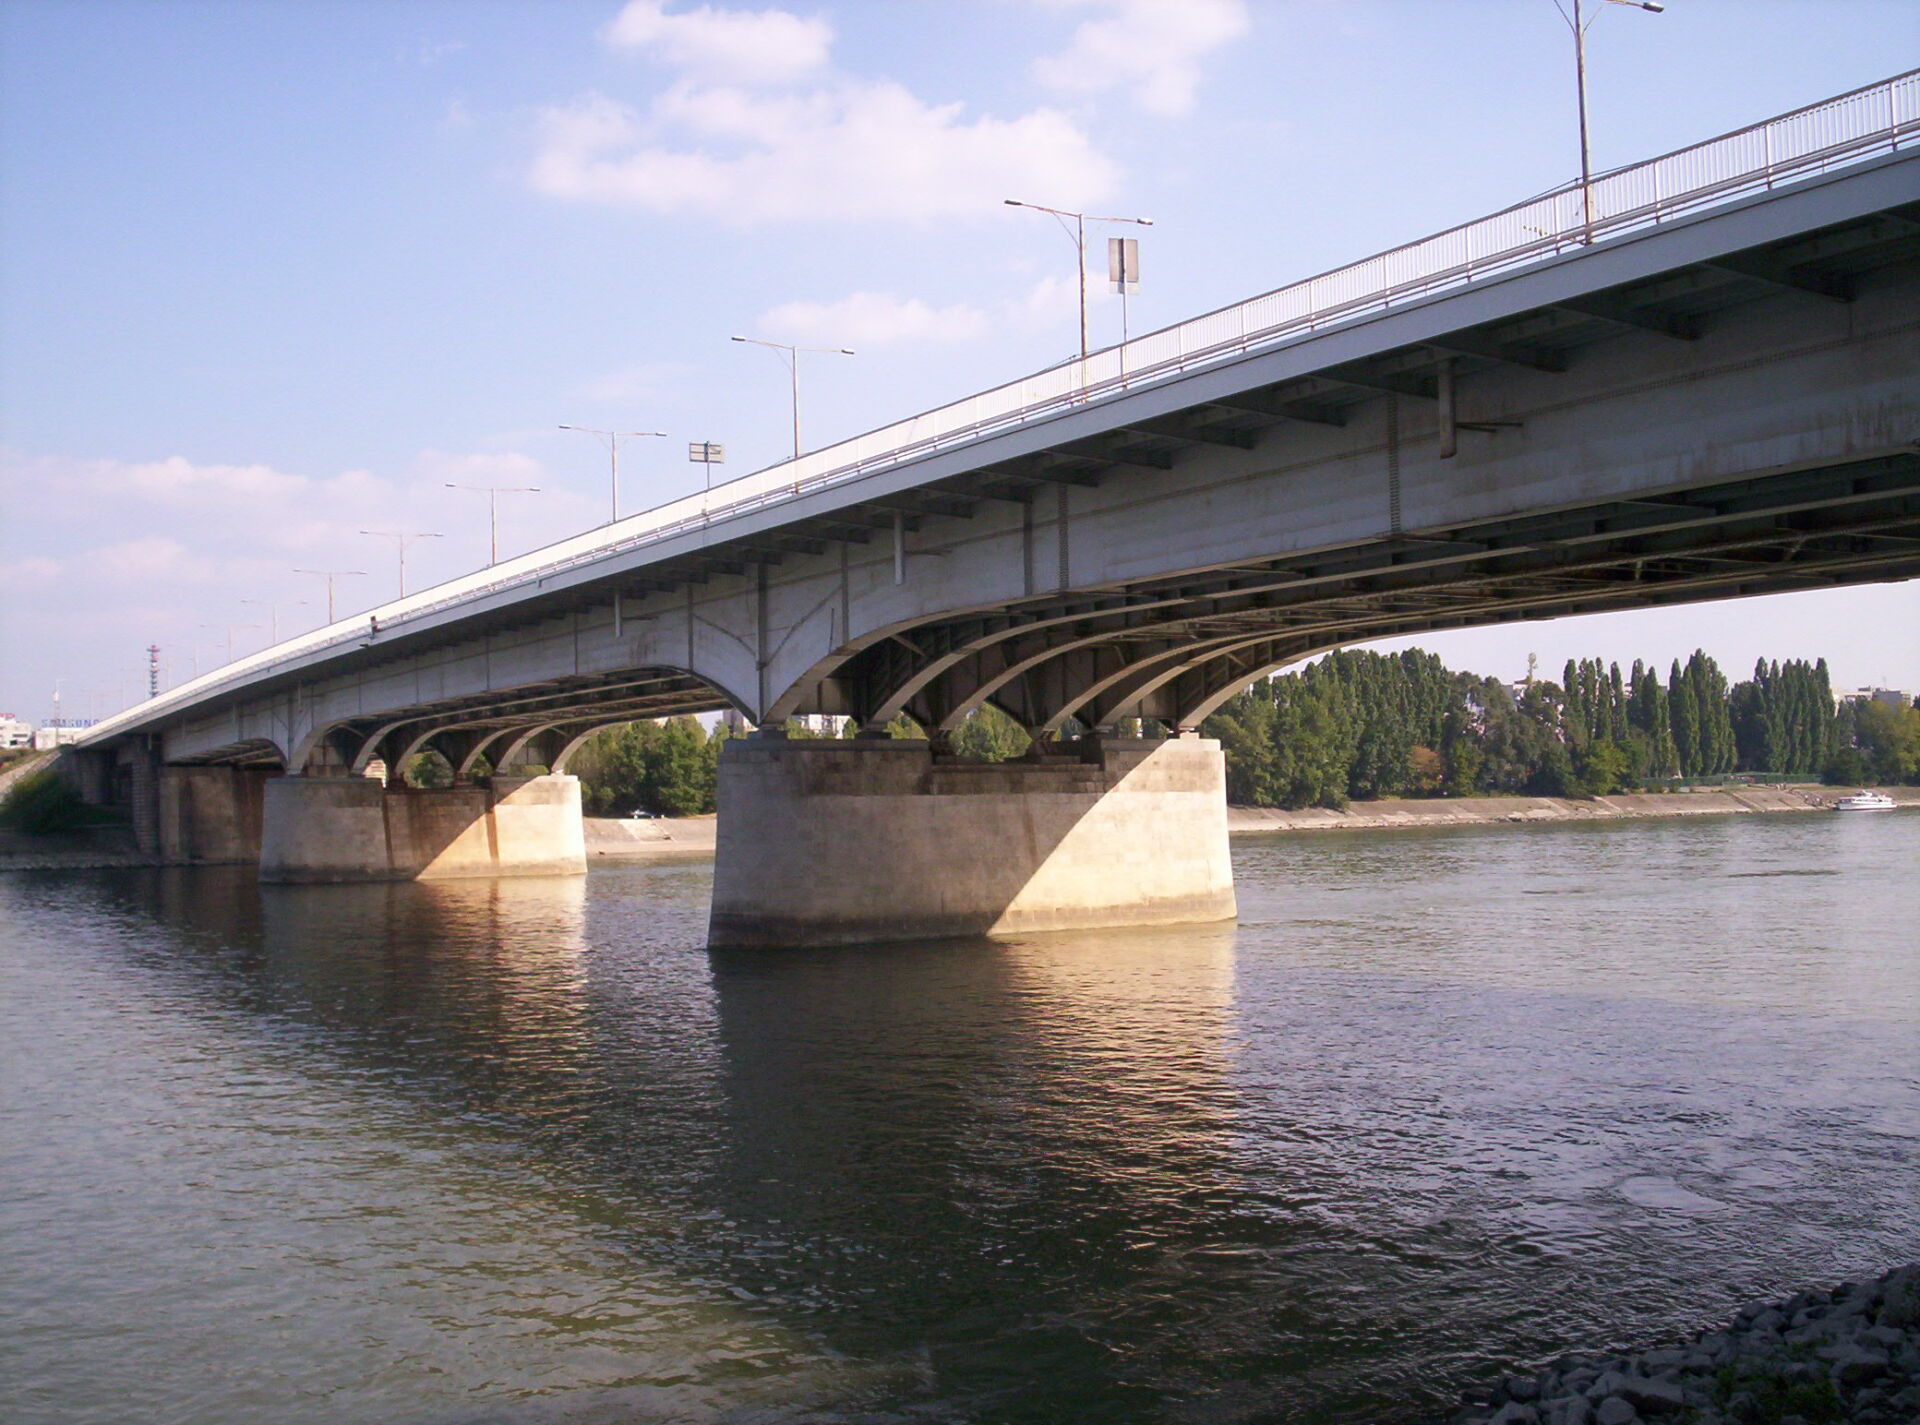 Árpád Bridge (Árpád-híd) is the busiest bridge in Budapest today